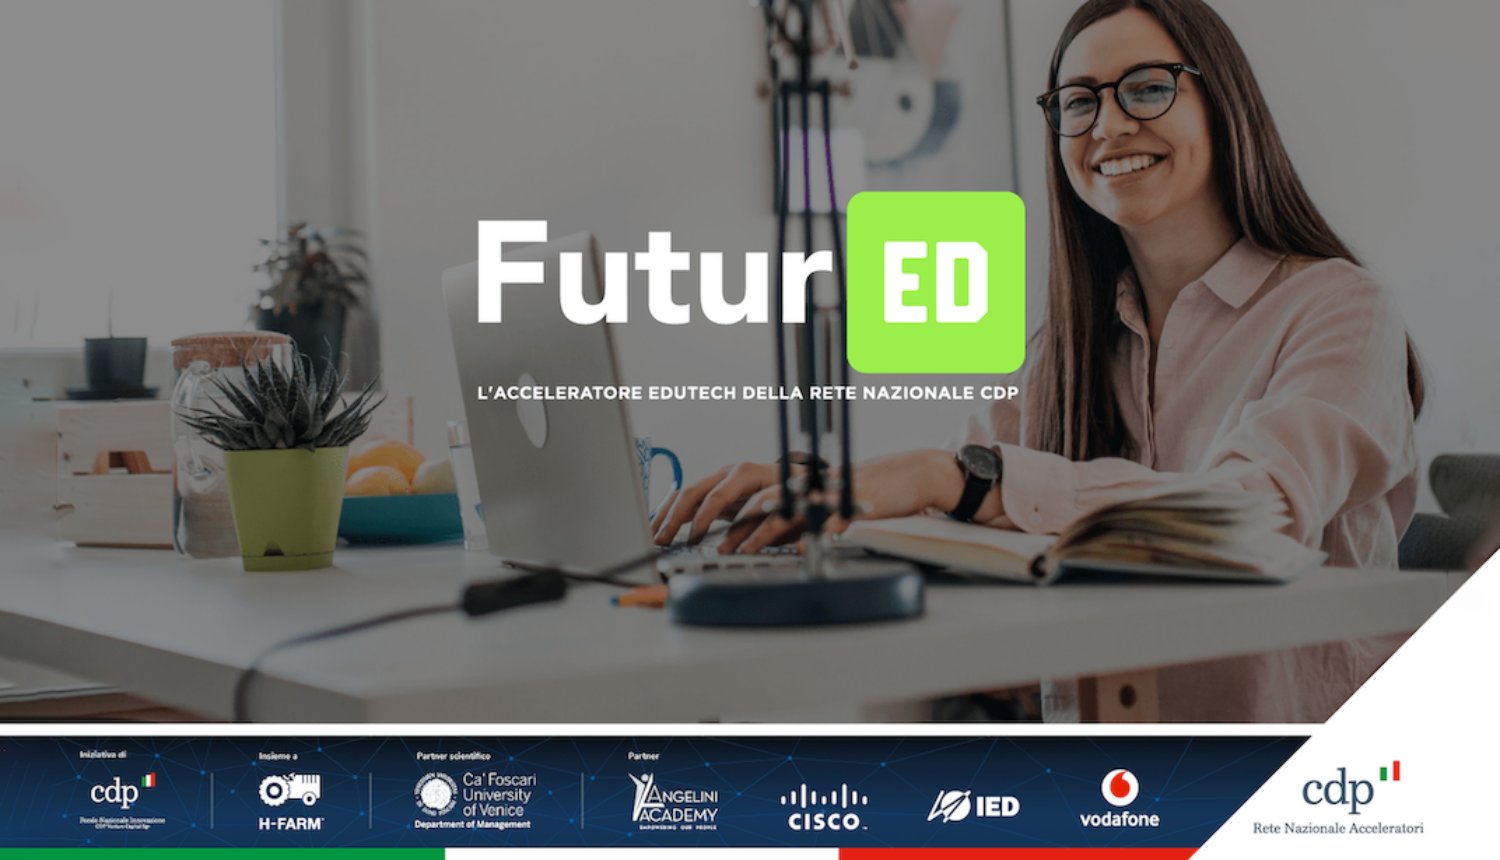 FuturED, the edutech accelerator of Rete Nazionale CDP